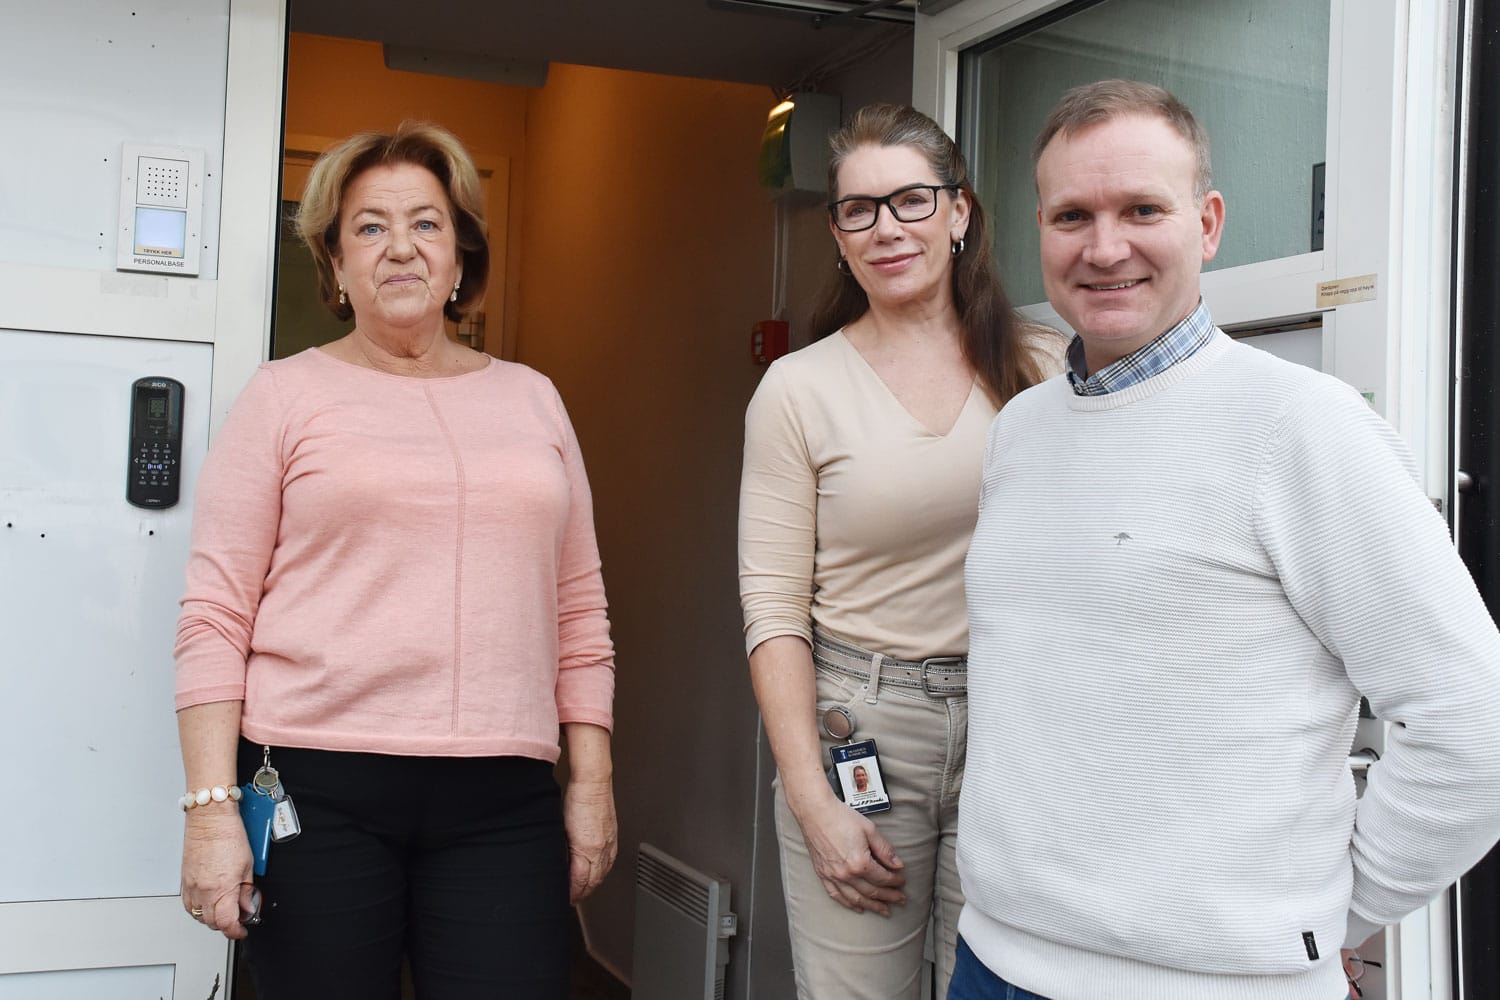 Krisesenterets ansatte Ingunn E. Åker og Hannah Morales sammen med Hugo Limkjær